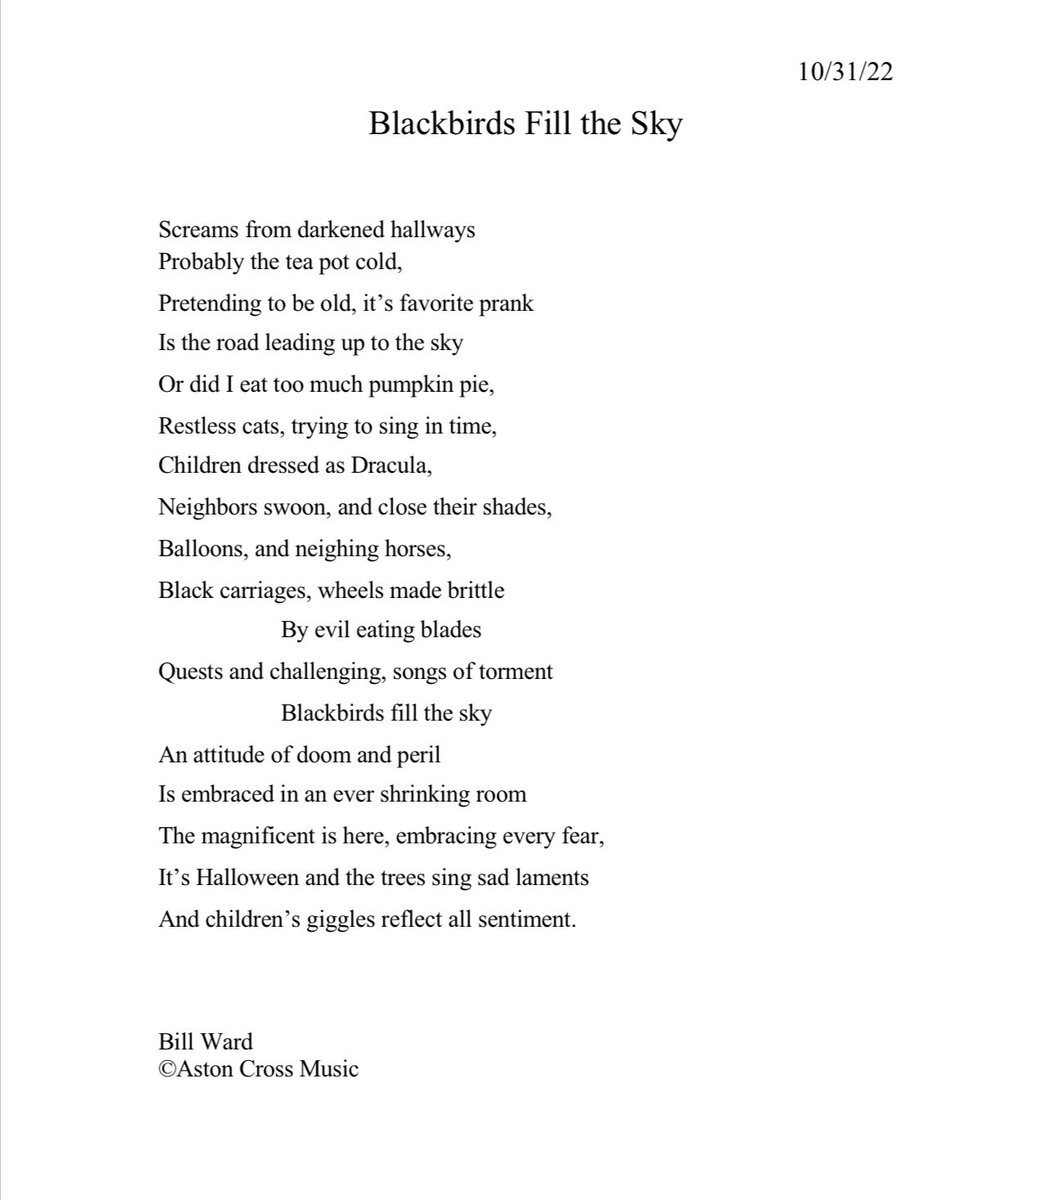 Blackbirds Fill the Sky